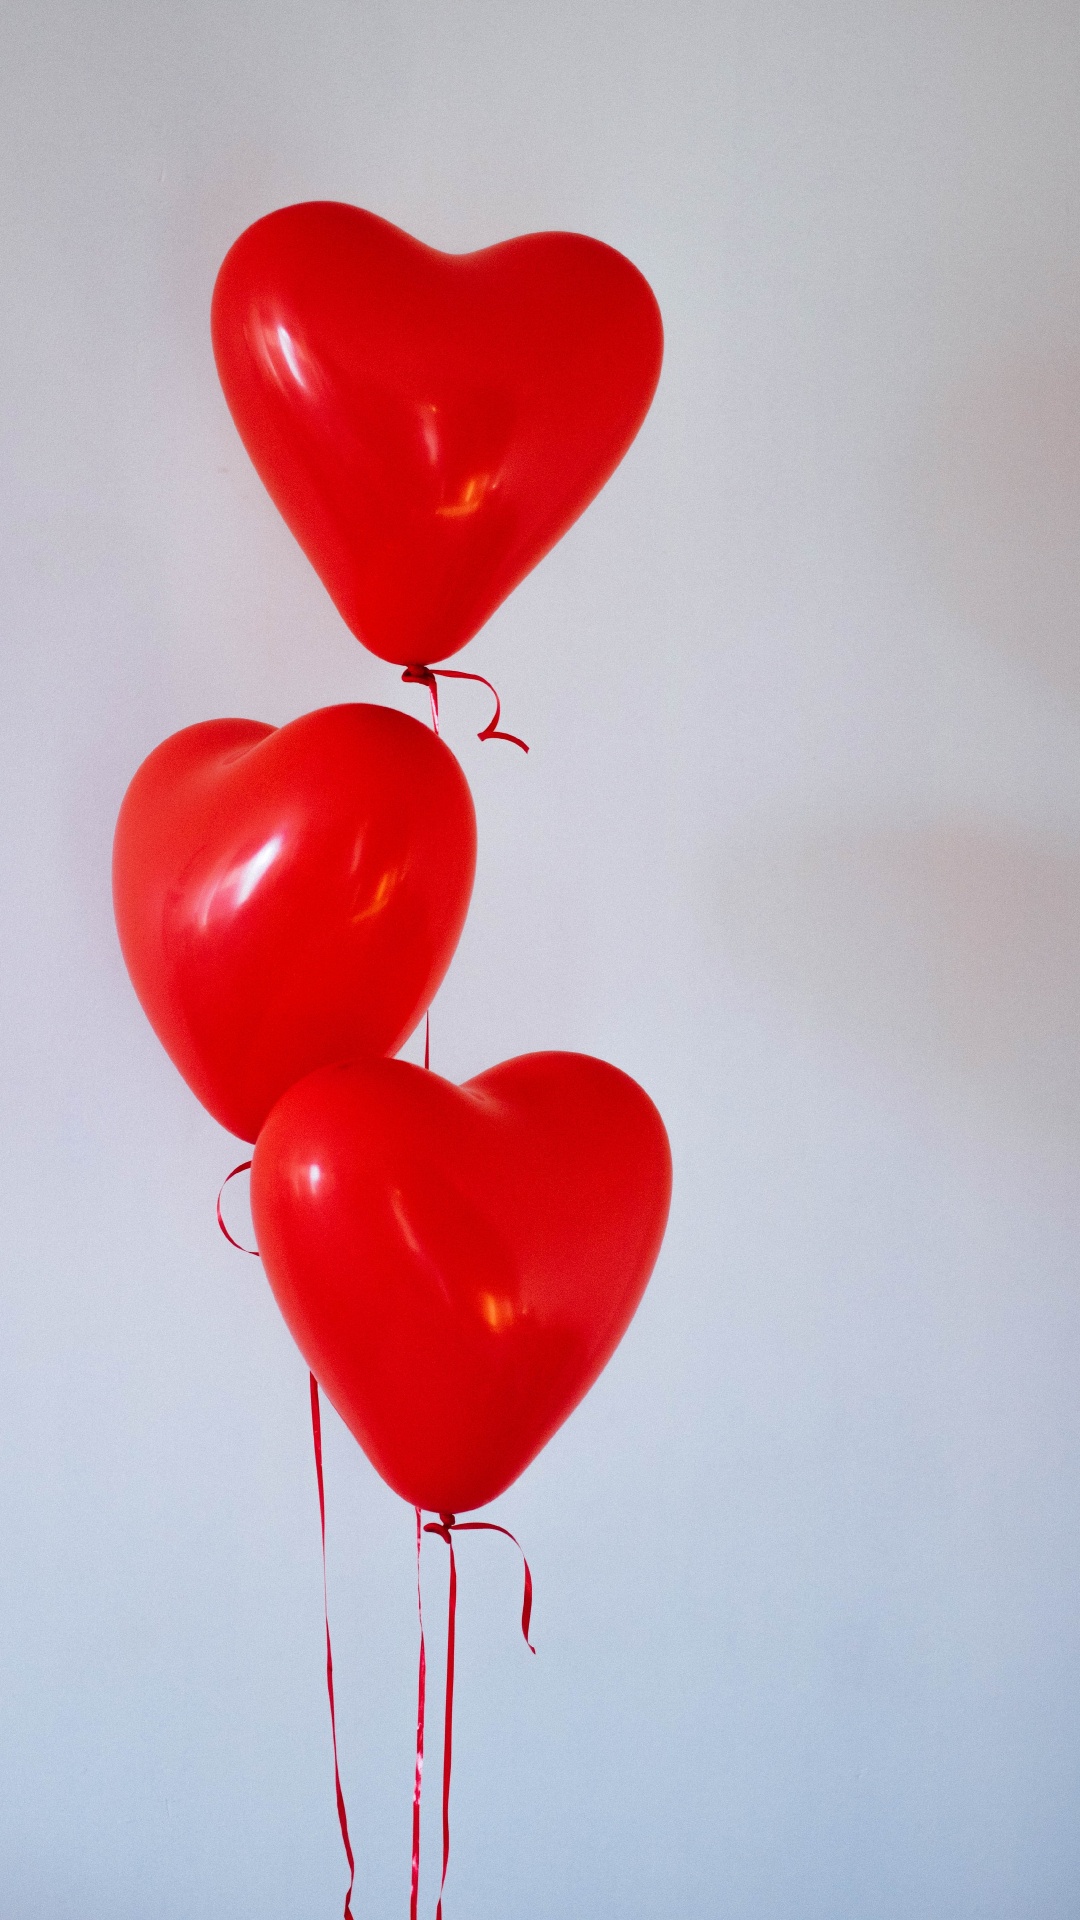 Ballon, Valentines Tag, Herzen, Organ, Liebe. Wallpaper in 1080x1920 Resolution